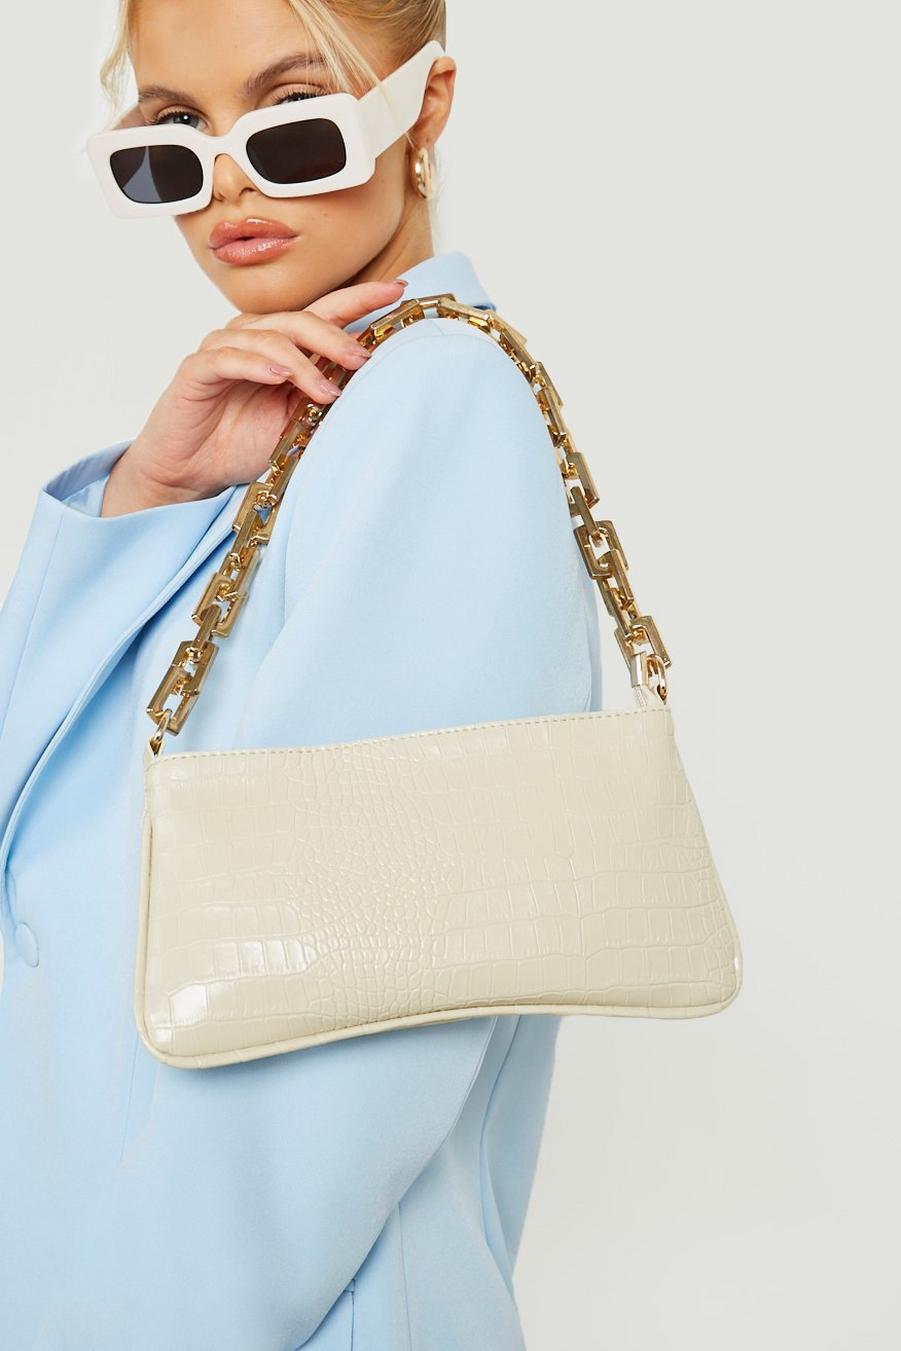 Cream vit Handväska med krokodilskinnseffekt och guldig kedja